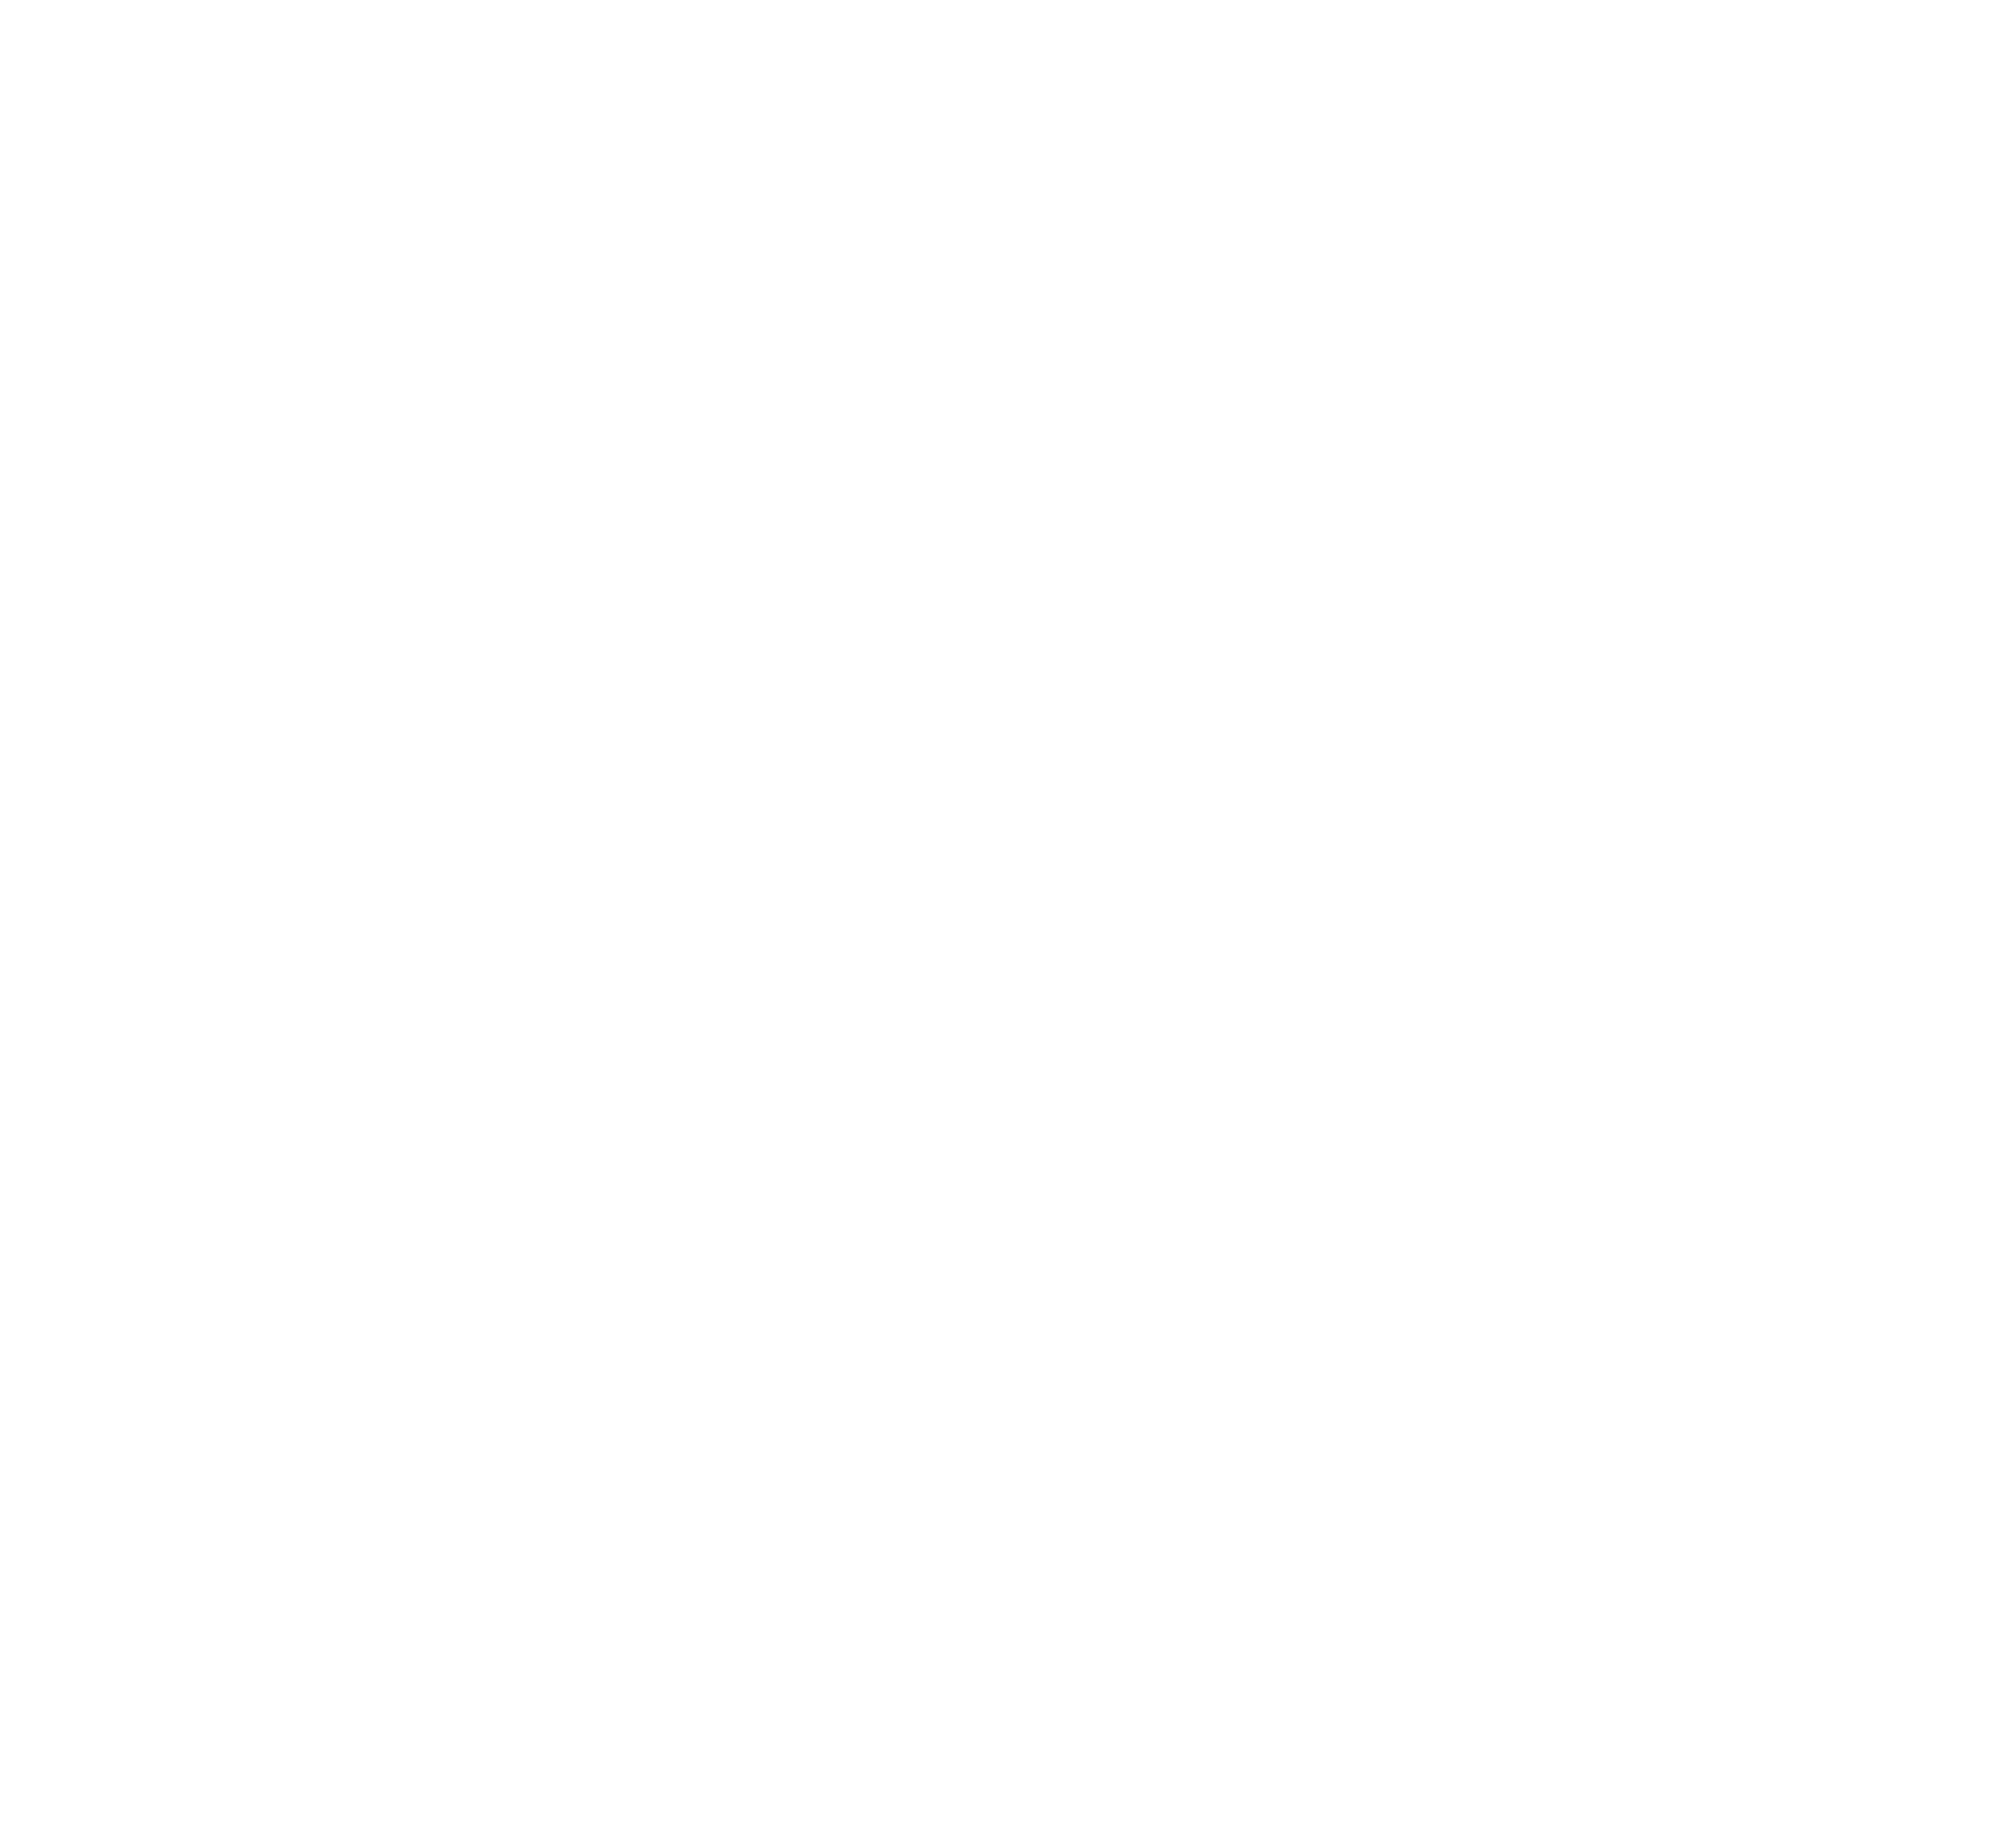 Stoevhase_Gmbh_Logo_04_24.png